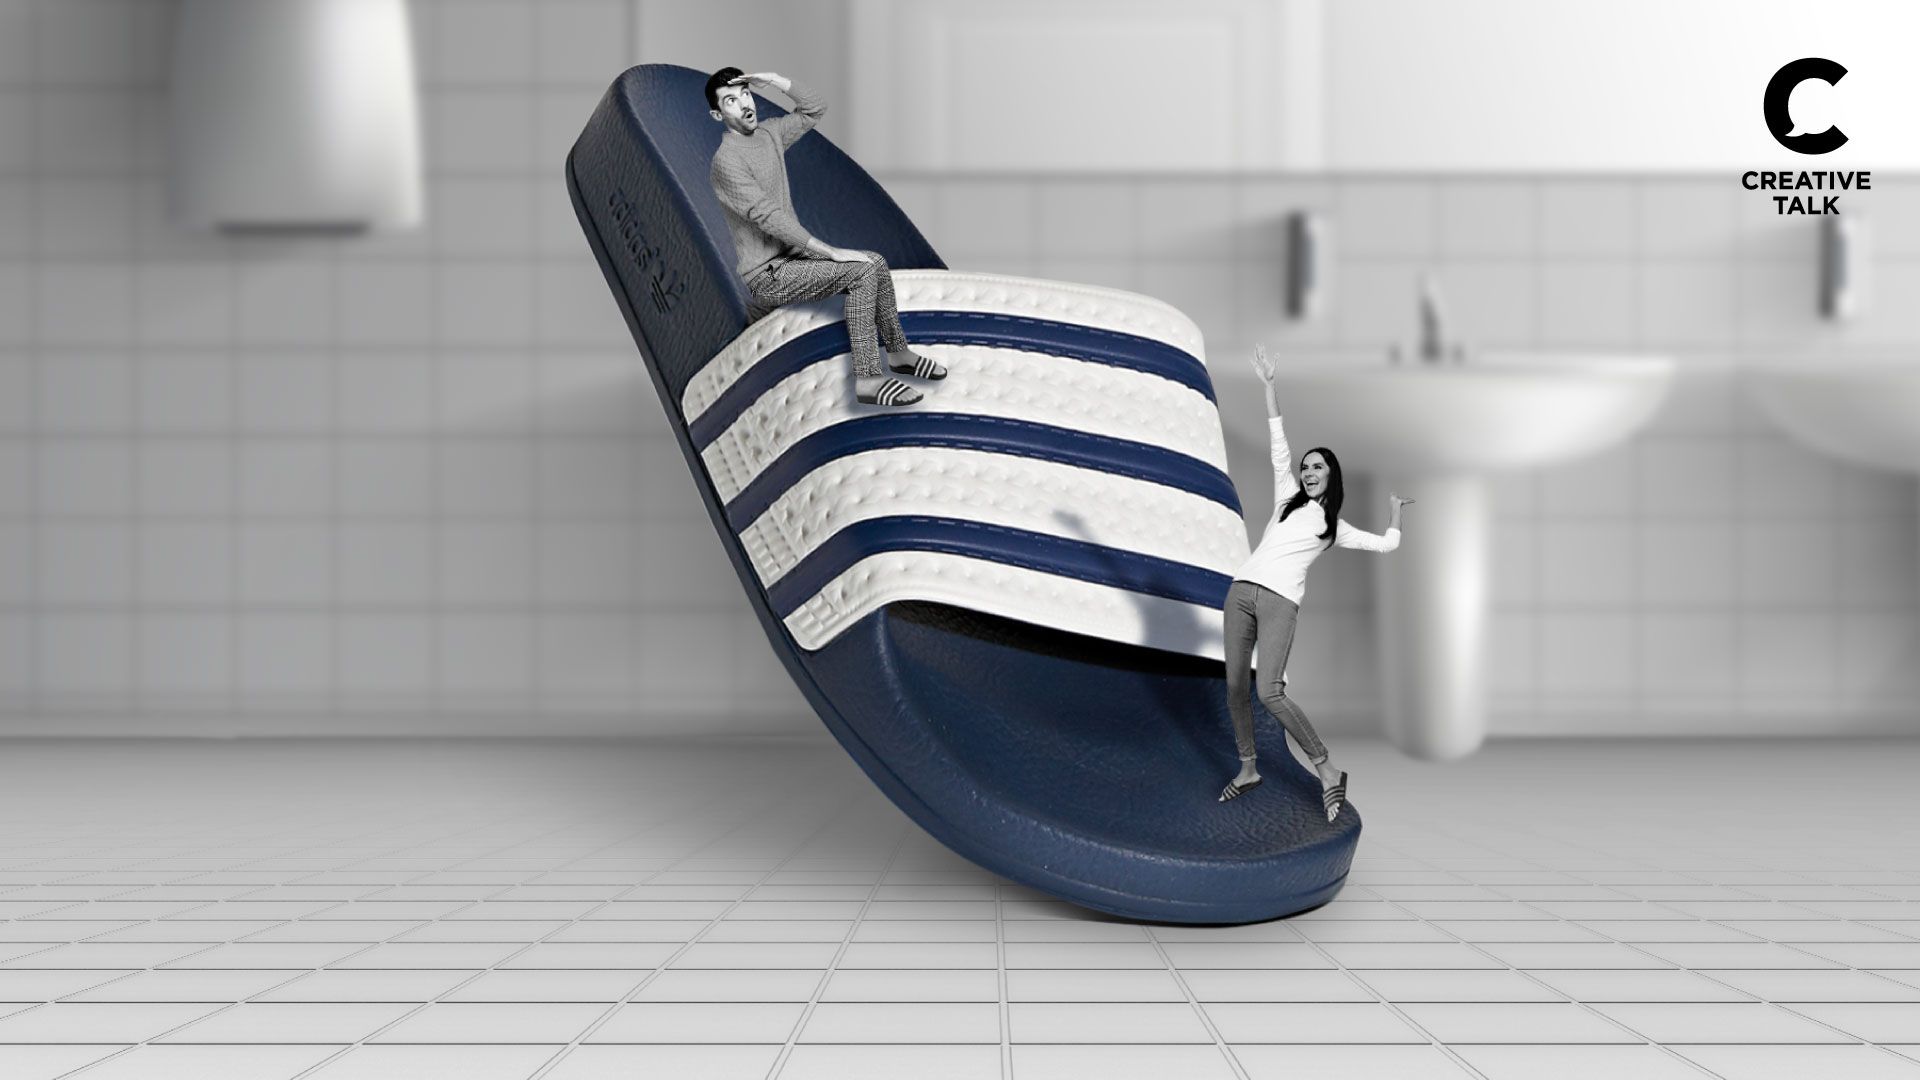 ‘Adilette’ รองเท้ายอดฮิต ยาวนาน 50 ปี ของ Adidas ที่เกิดจากนักฟุตบอลอยากได้รองเท้ากันลื่นในห้องน้ำ